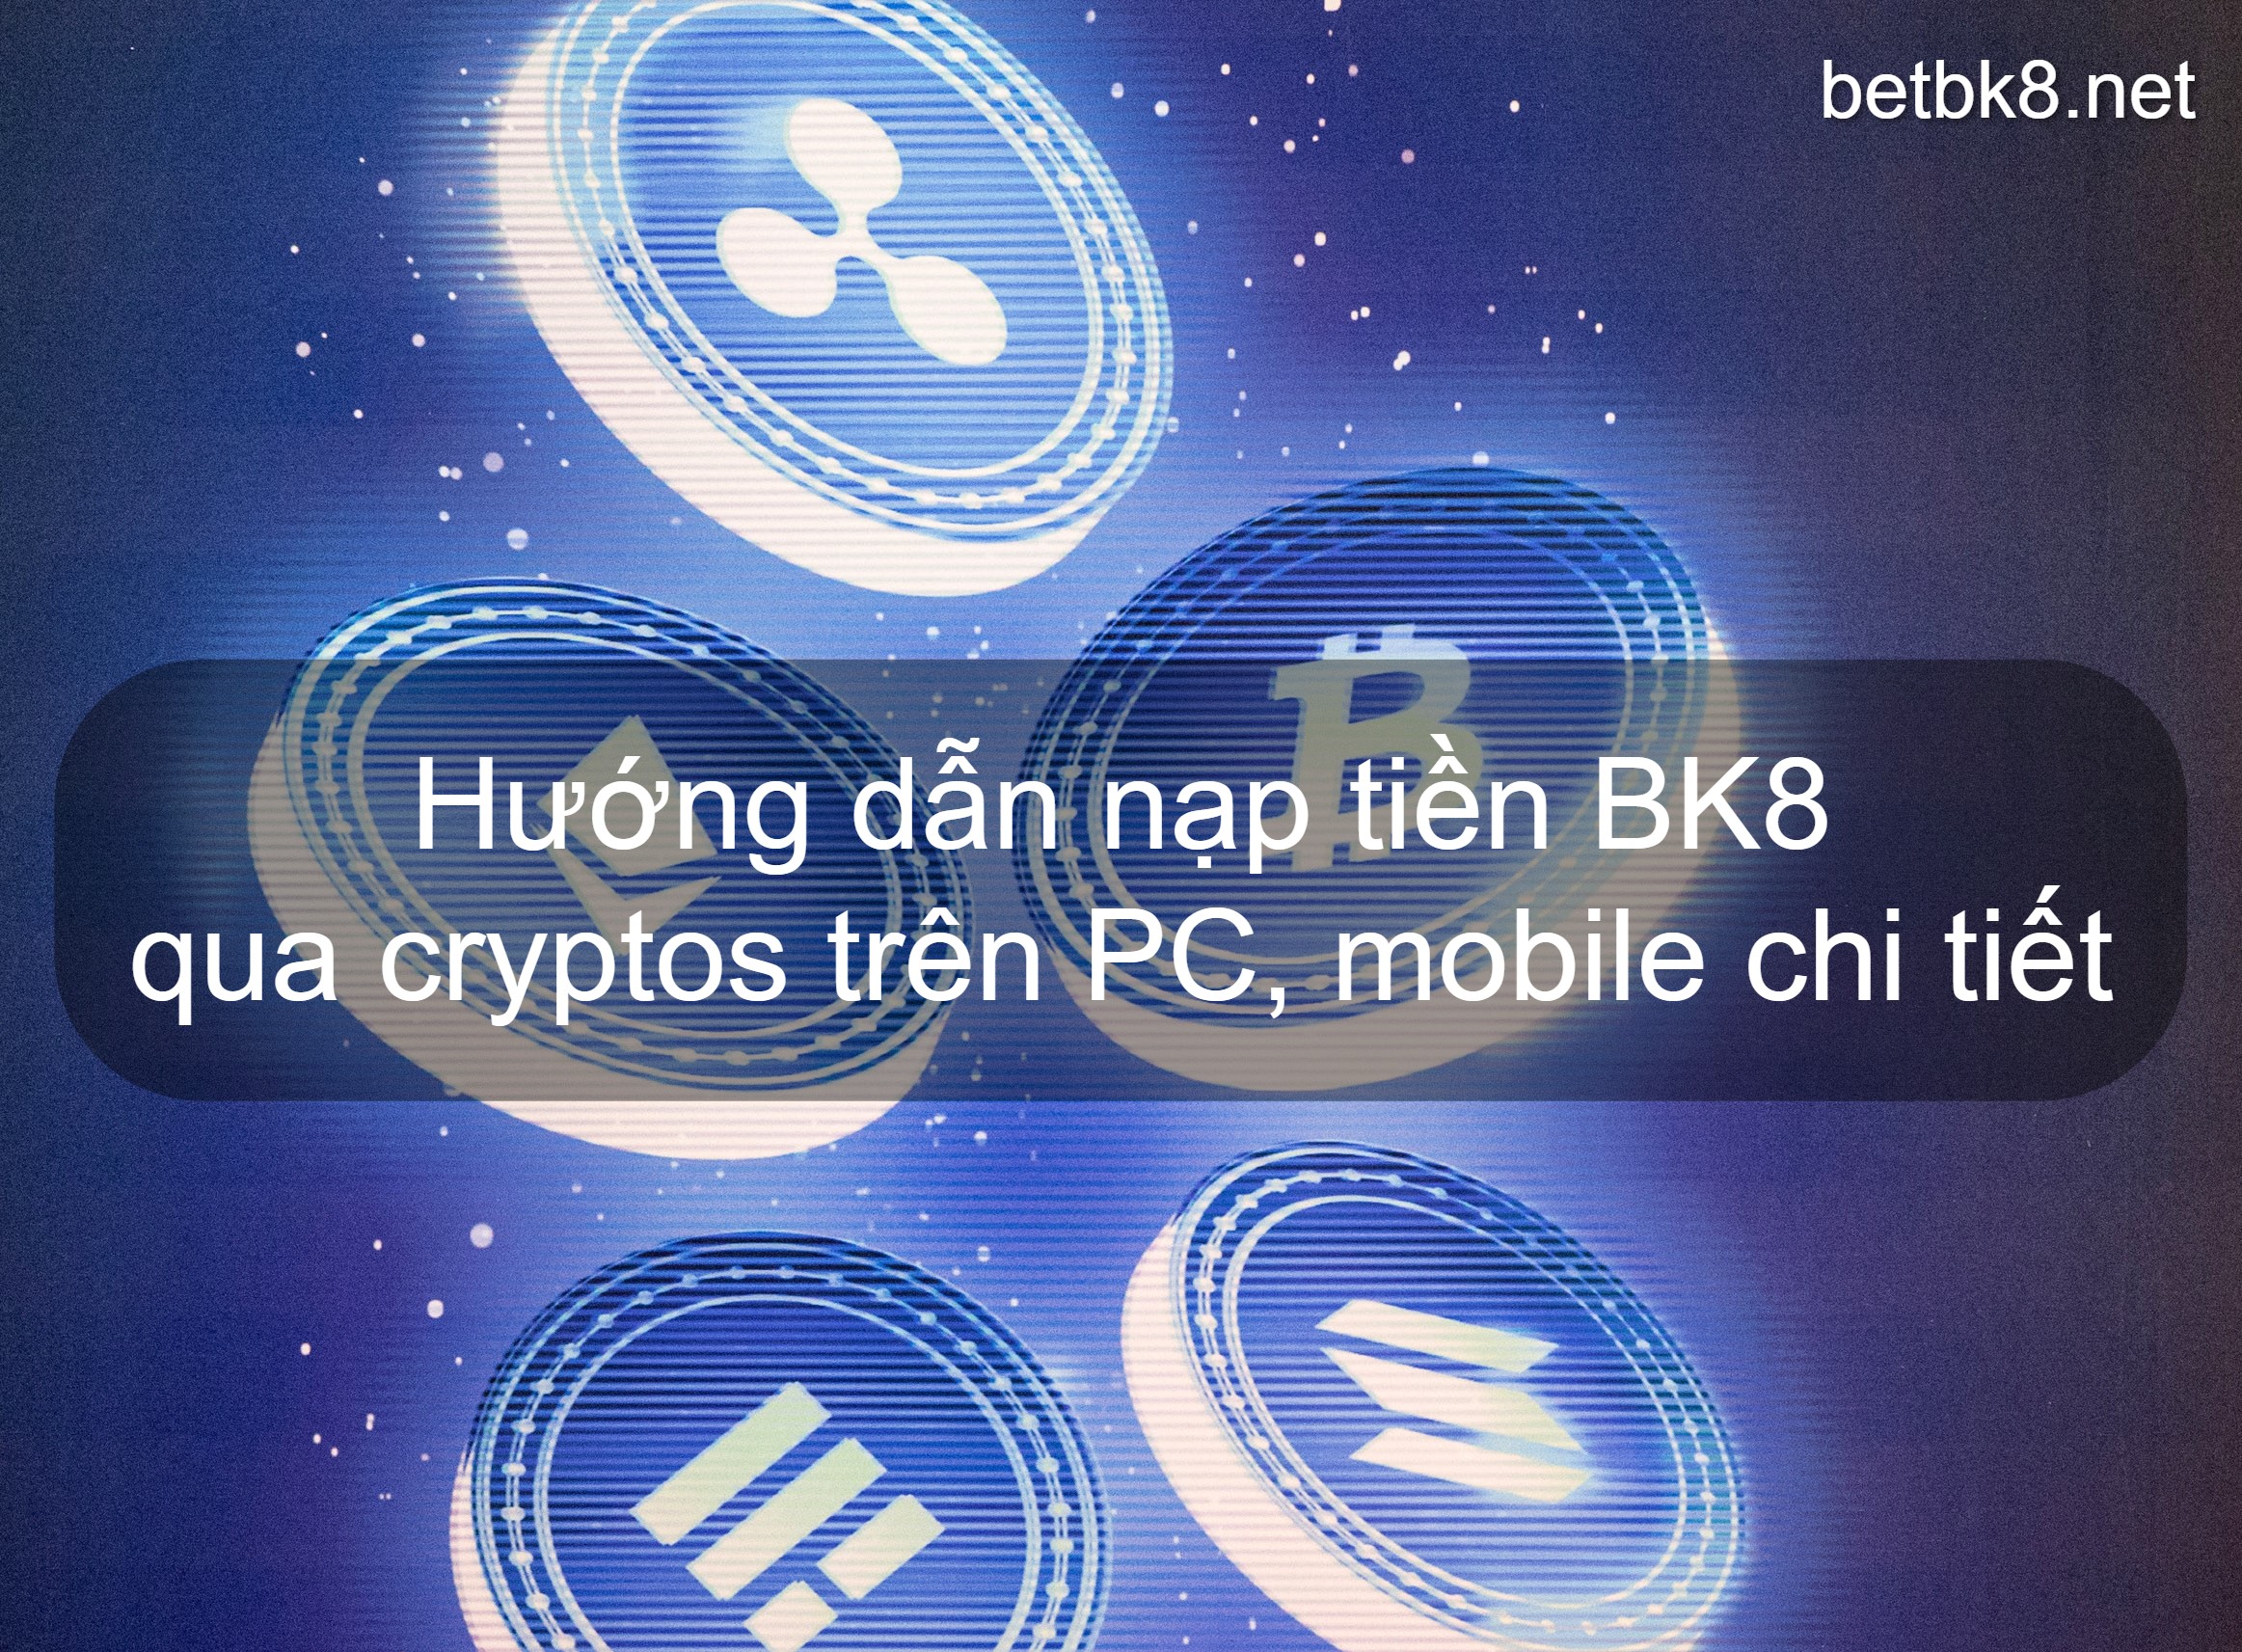 Hướng dẫn nạp tiền BK8 qua cryptos trên PC, mobile chi tiết